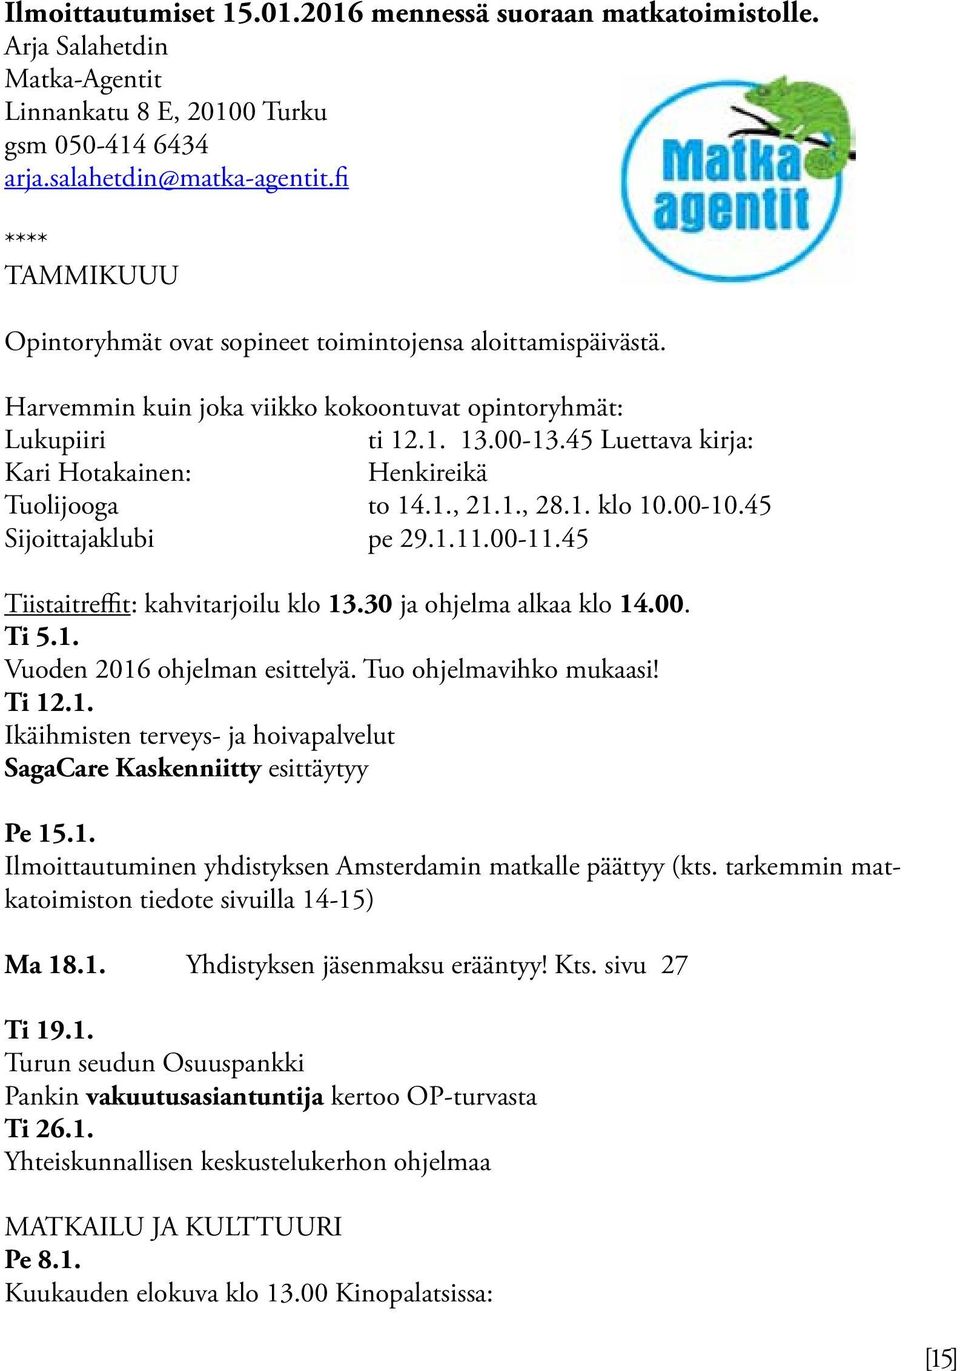 45 Luettava kirja: Kari Hotakainen: Henkireikä Tuolijooga to 14.1., 21.1., 28.1. klo 10.00-10.45 Sijoittajaklubi pe 29.1.11.00-11.45 Tiistaitreffit: kahvitarjoilu klo 13.30 ja ohjelma alkaa klo 14.00. Ti 5.